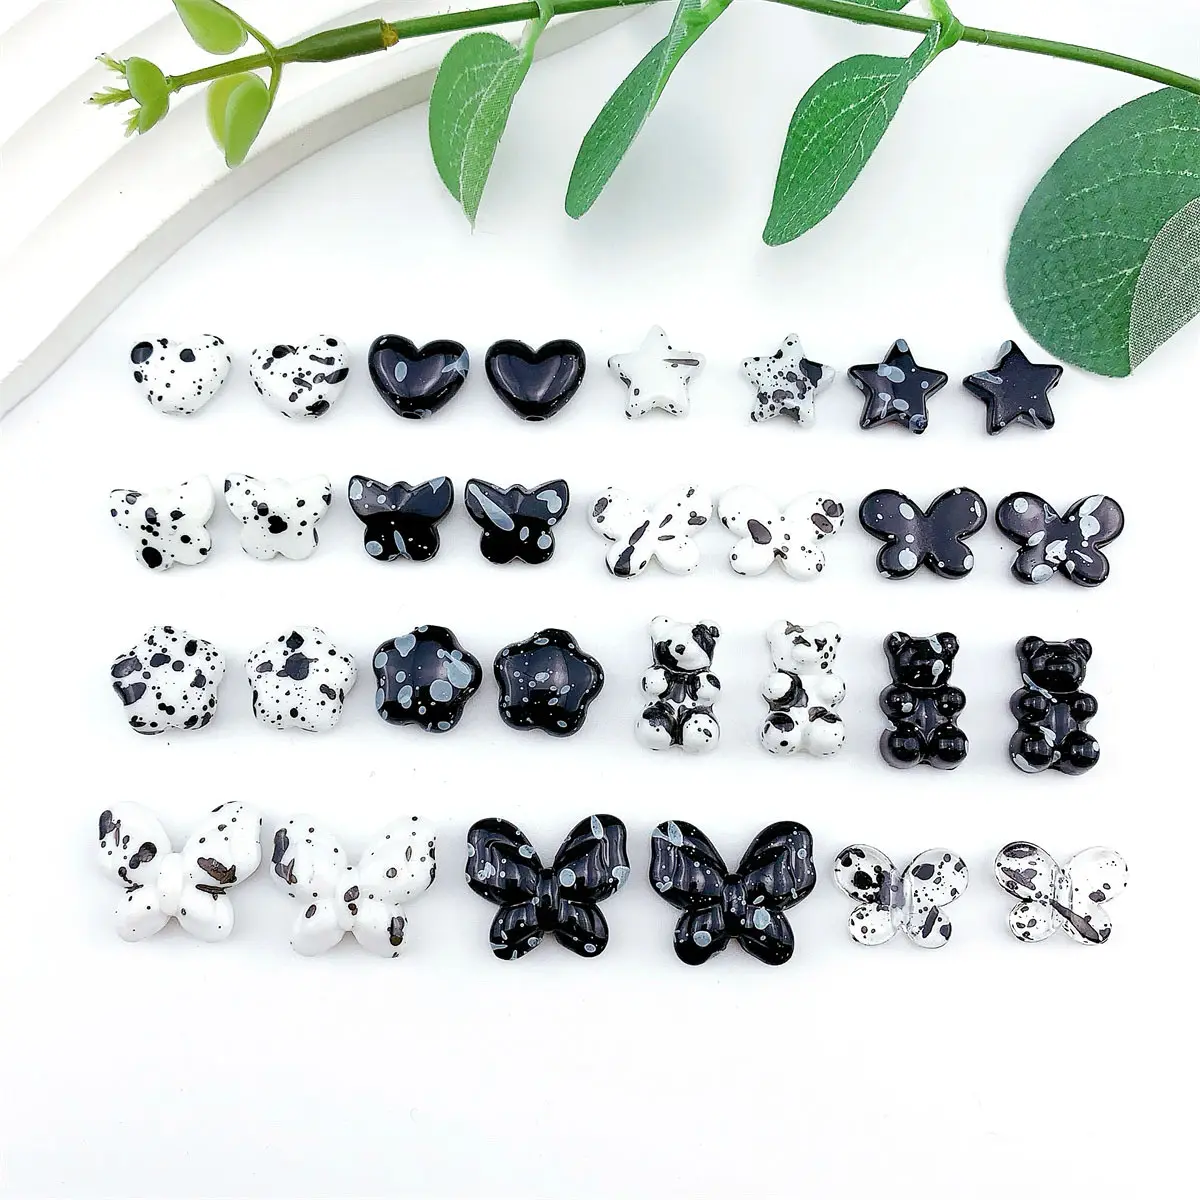 Nuevo acrílico blanco y negro efecto de contraste de color Love Bear mariposa rebordear DIY joyería hecha a mano que hace cuentas sueltas